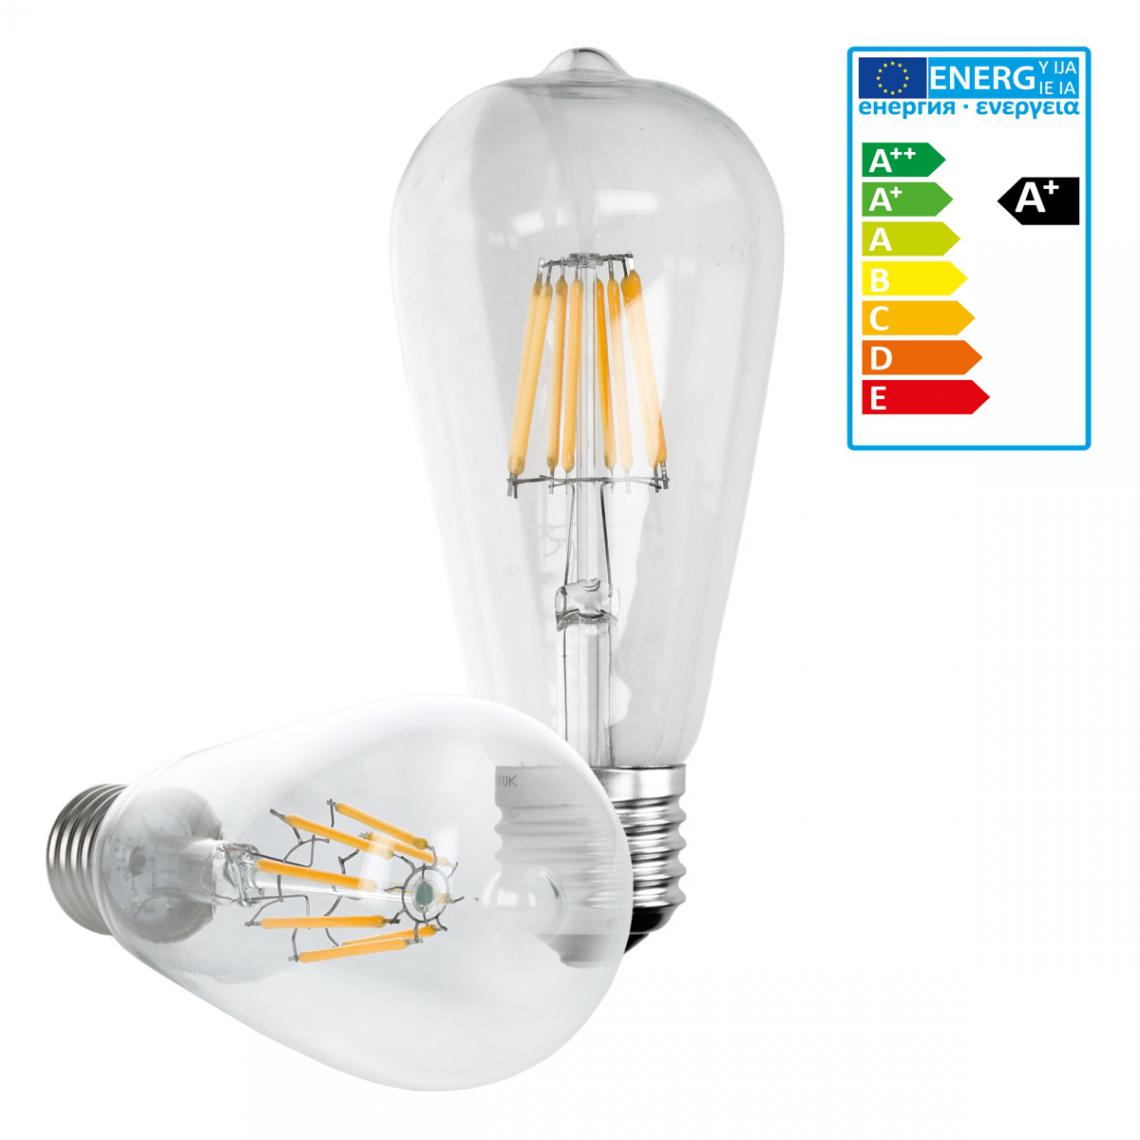 Ecd Germany - ECD Germany 4 x LED Filament de l'ampoule E27 classique Edison 8W 816 lumens angle de faisceau 120 ° AC 220-240 reste caché et remplace environ 45W Lampe incandescente Blanc Chaud - Ampoules LED